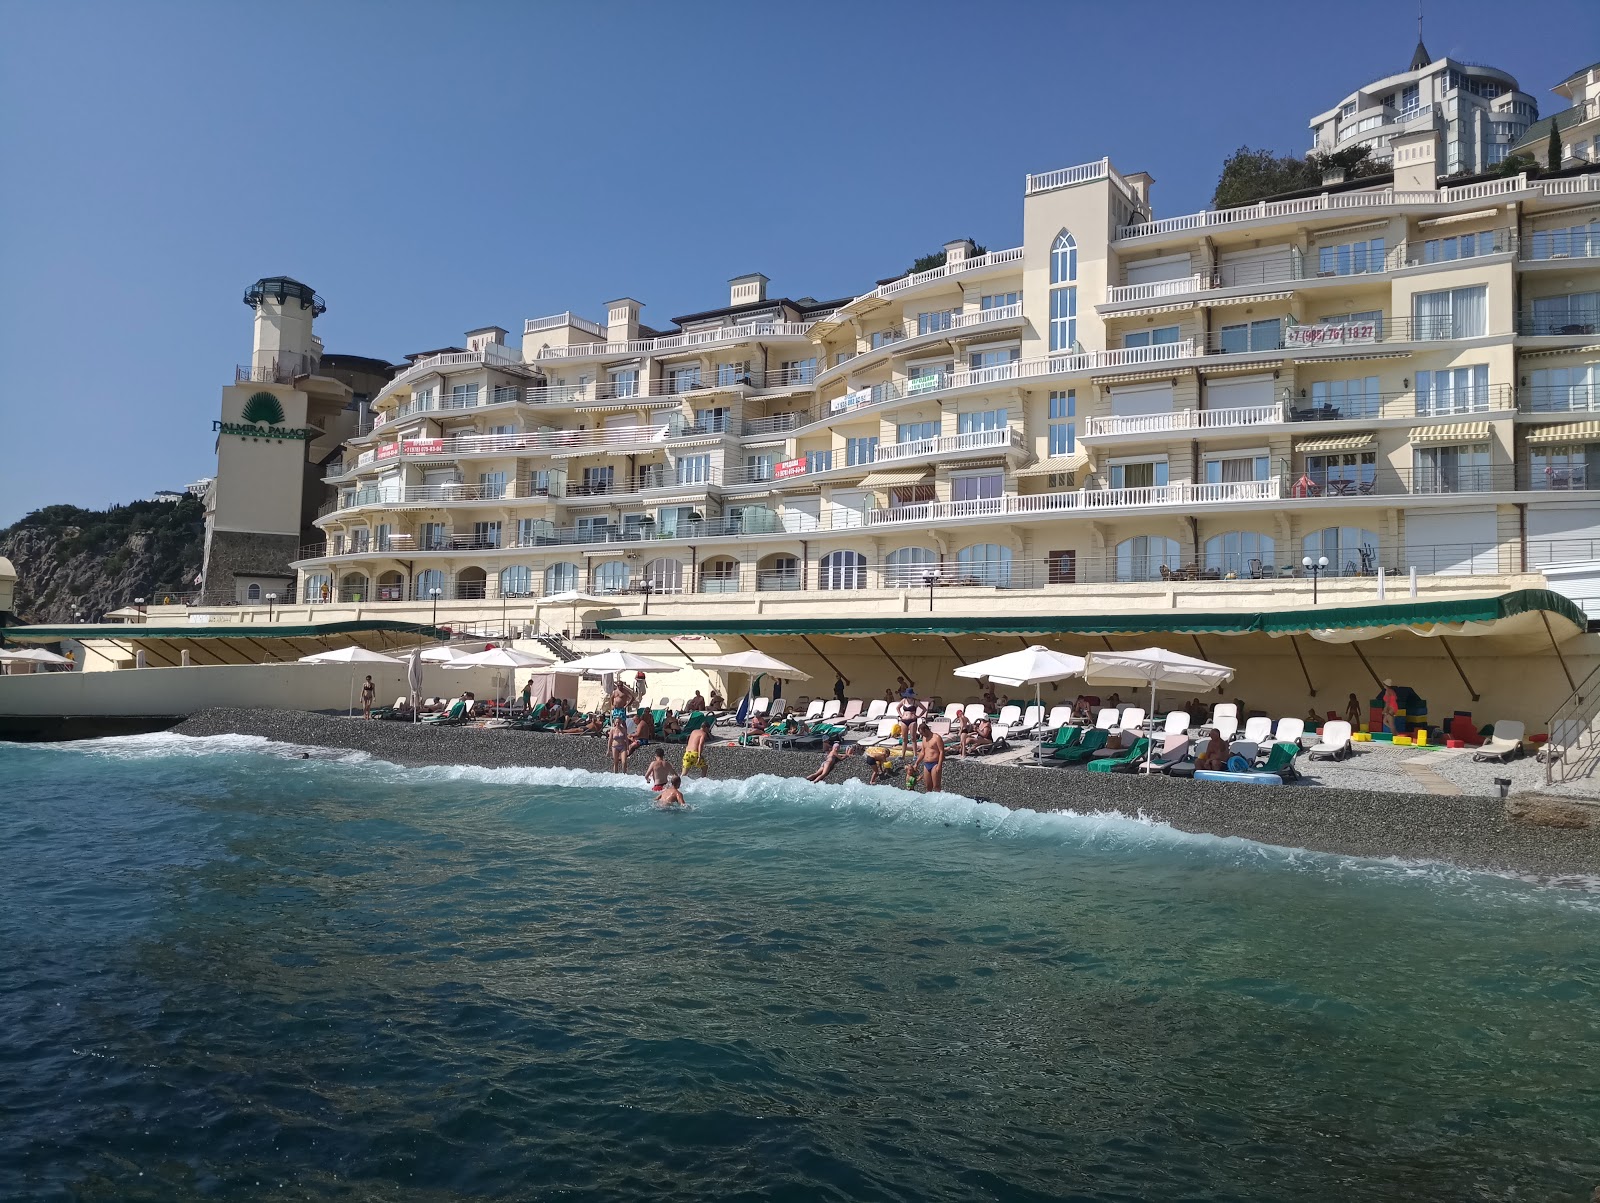 Photo of Palmira beach hotel area